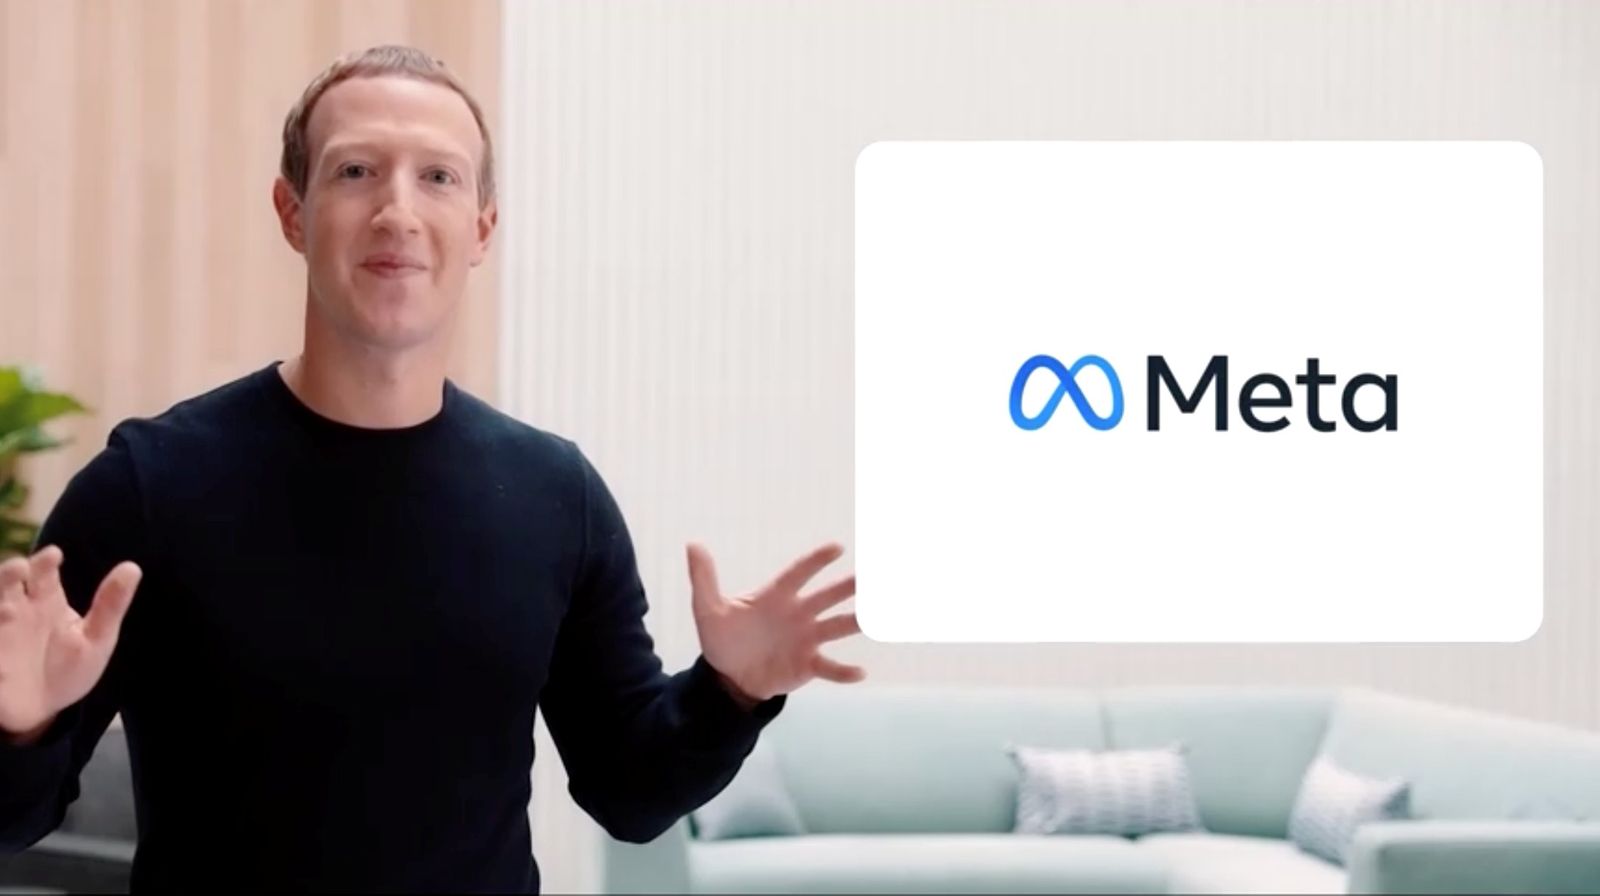 الرئيس التنفيذي لشركة فيسبوك مارك زوكربيرج خلال إعلان الاسم الجديد وبجانبه شعار 